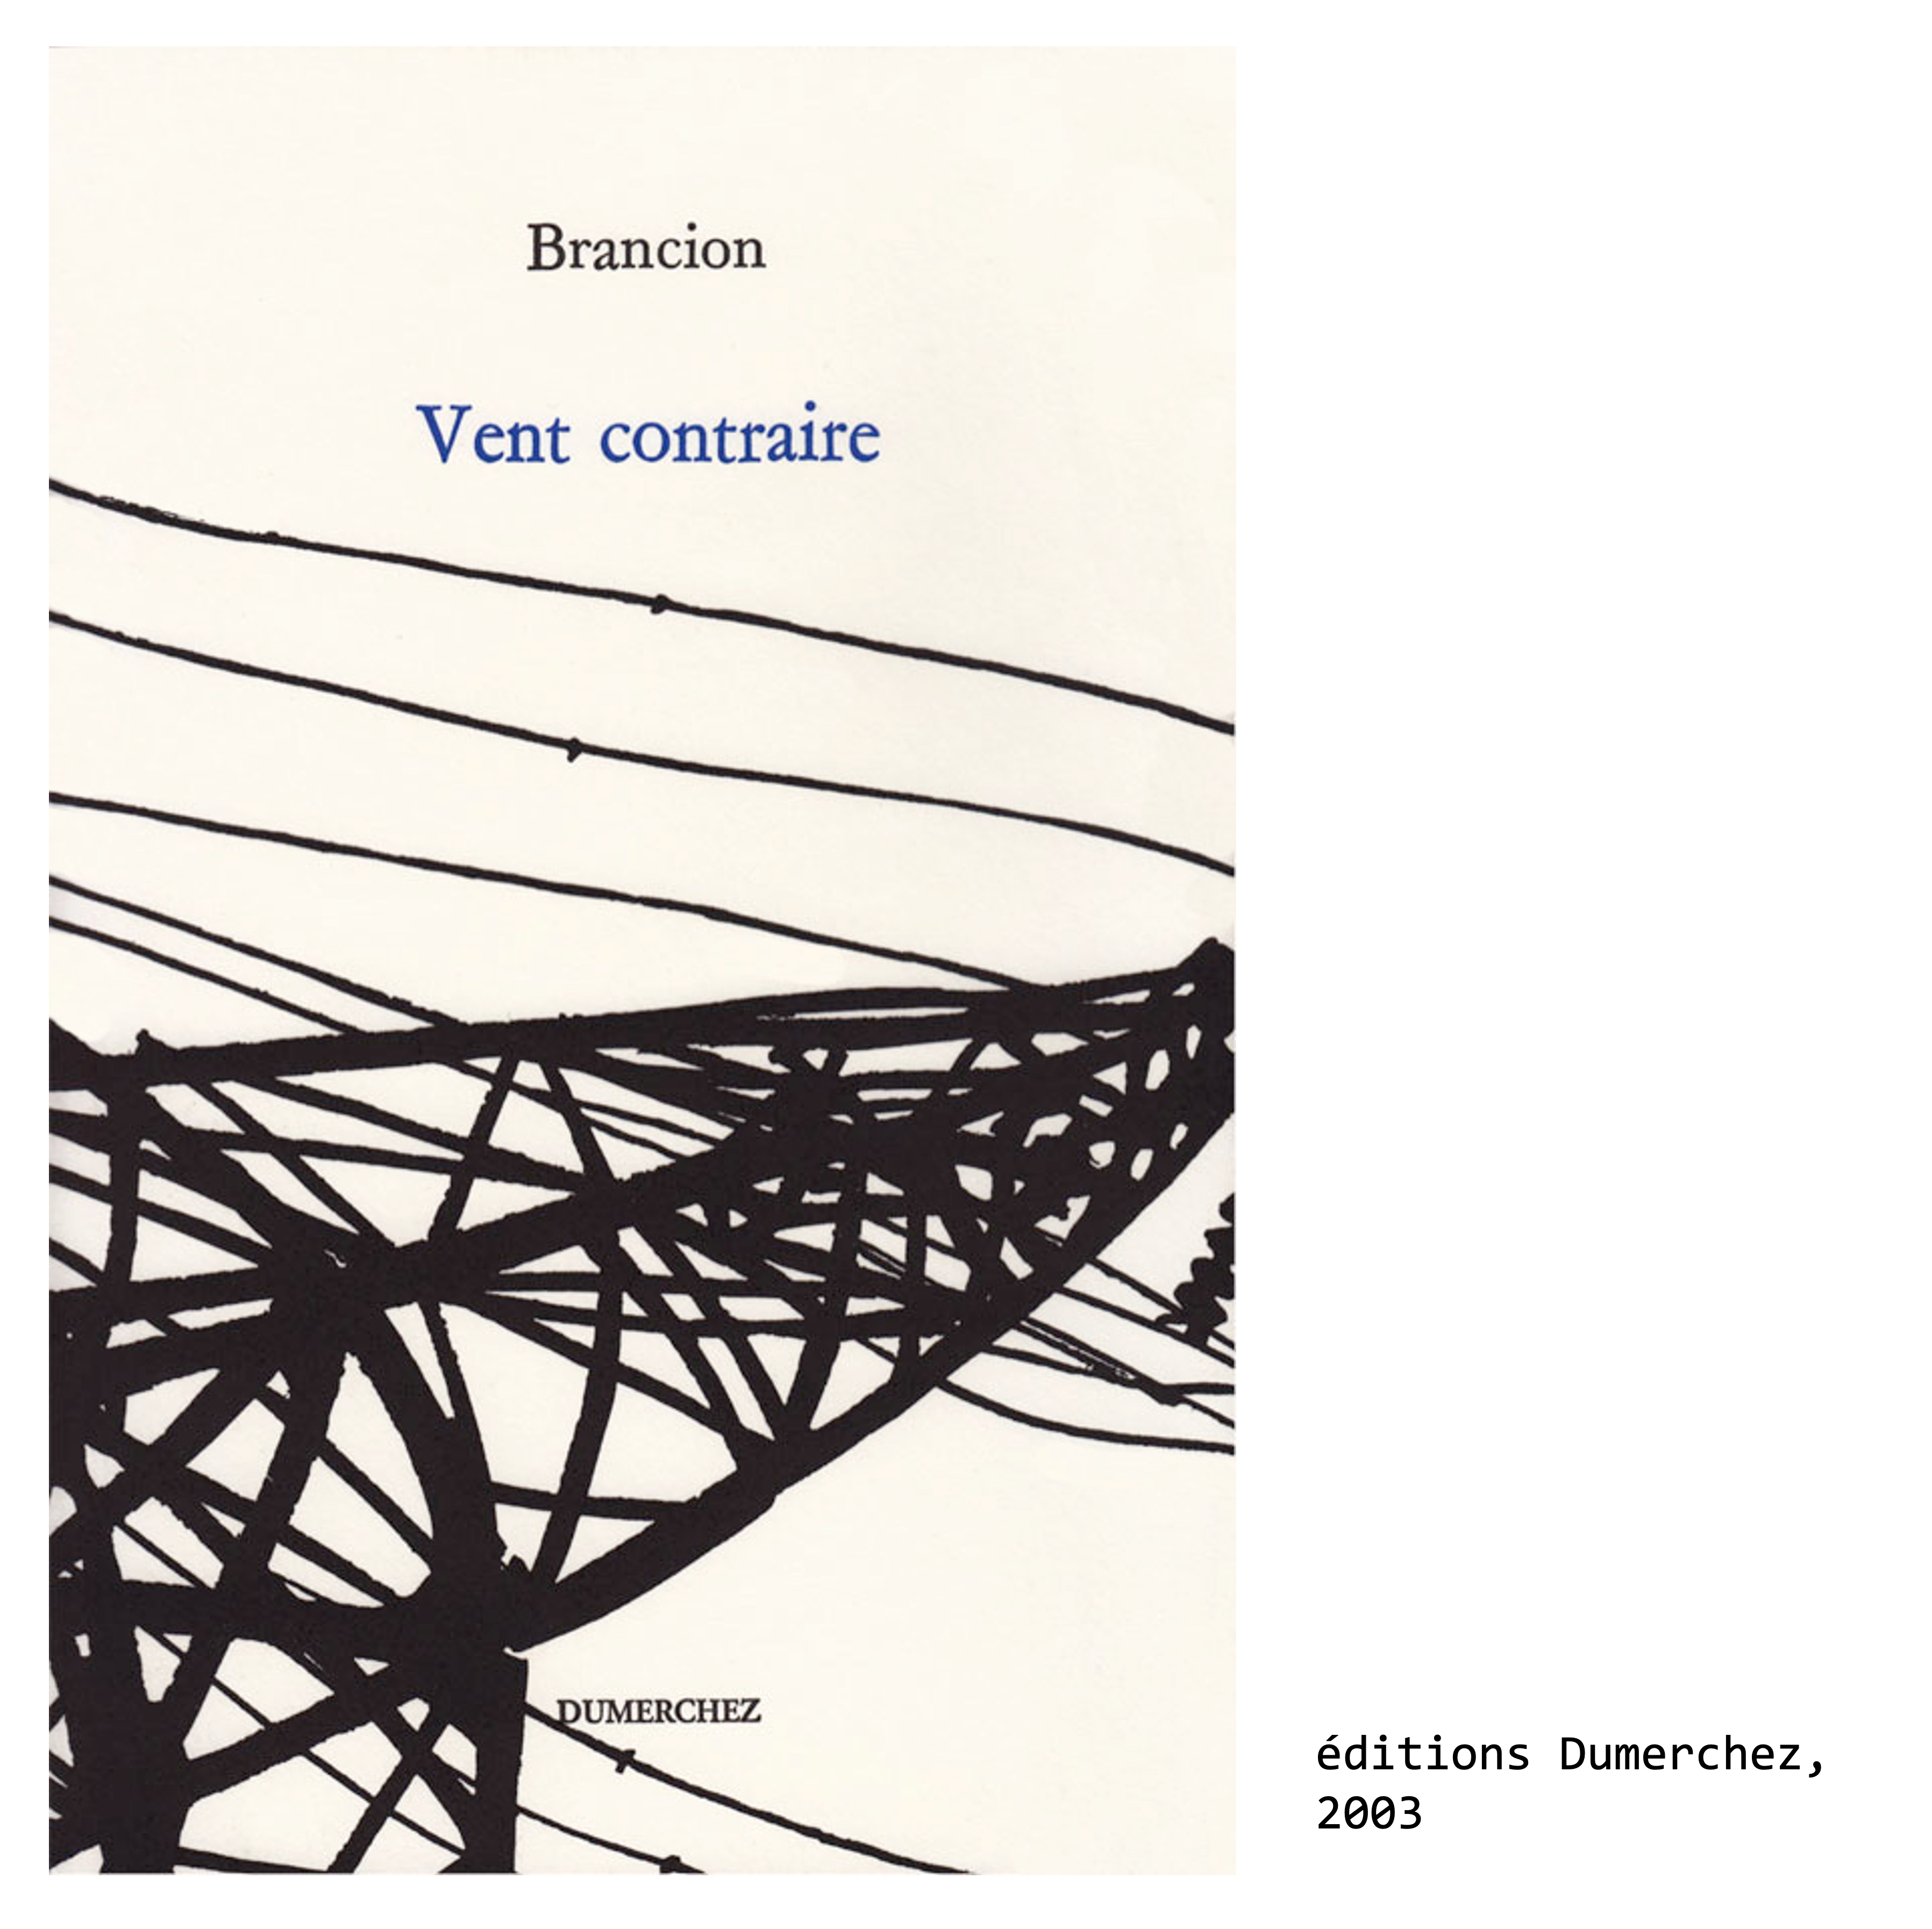 Vent contraire, éditions Dumerchez, 2003 - Couverture du livre de Paul de Brancion, écrivain et poète